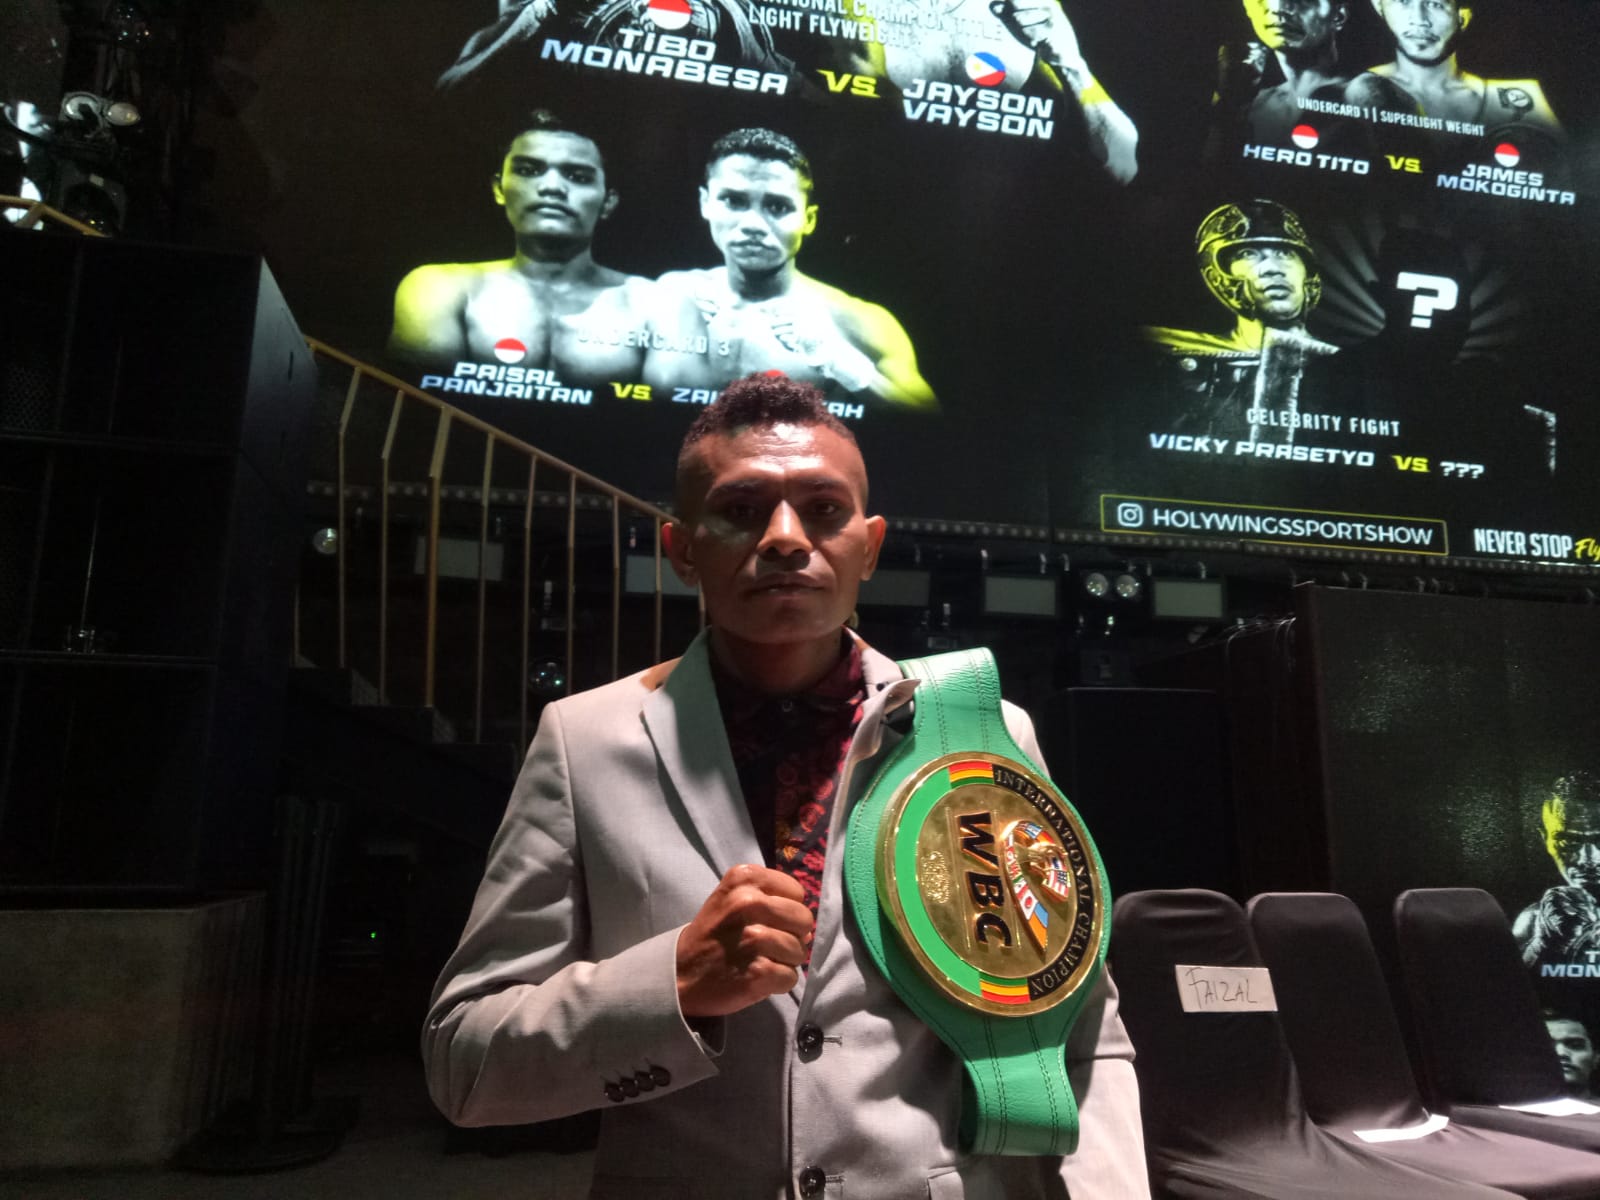 Belum Tanggapi Surat WBC, ATI Tetap Dukung Tibo Monabesa Menang atas Jayson Vayson